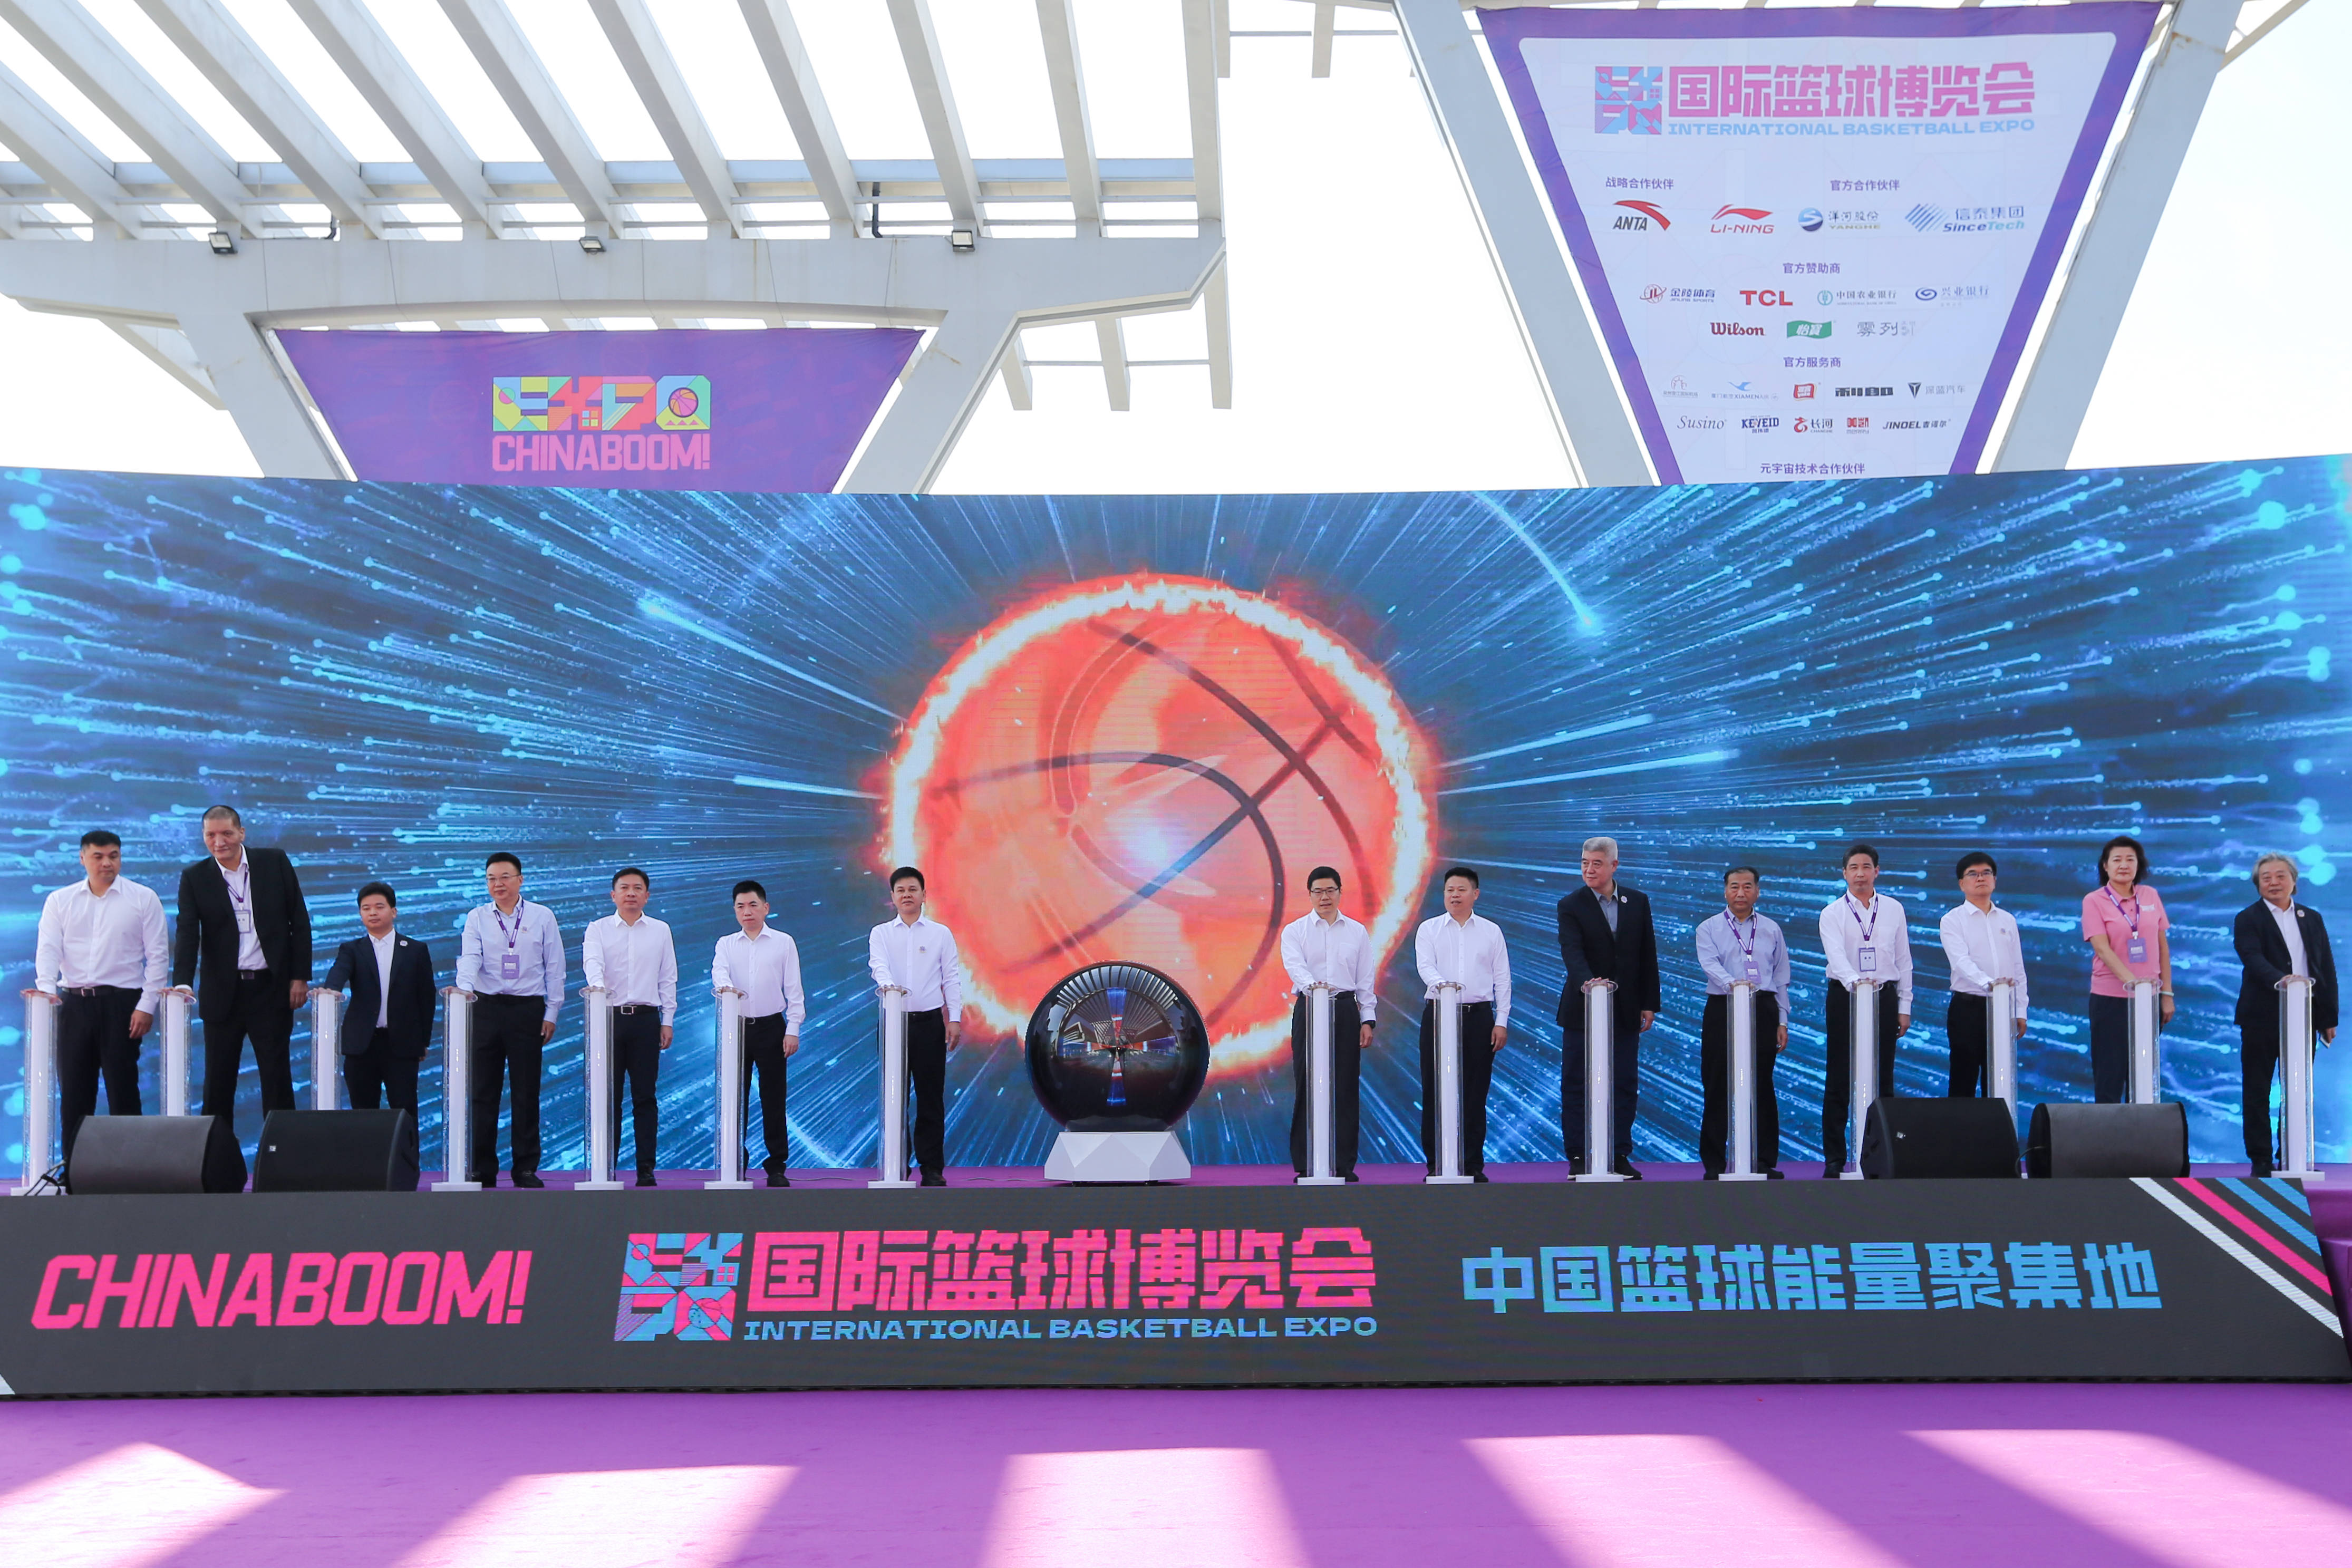 晋江篮球城天下英雄会 首届国际篮球博览会在晋江召开,篮球